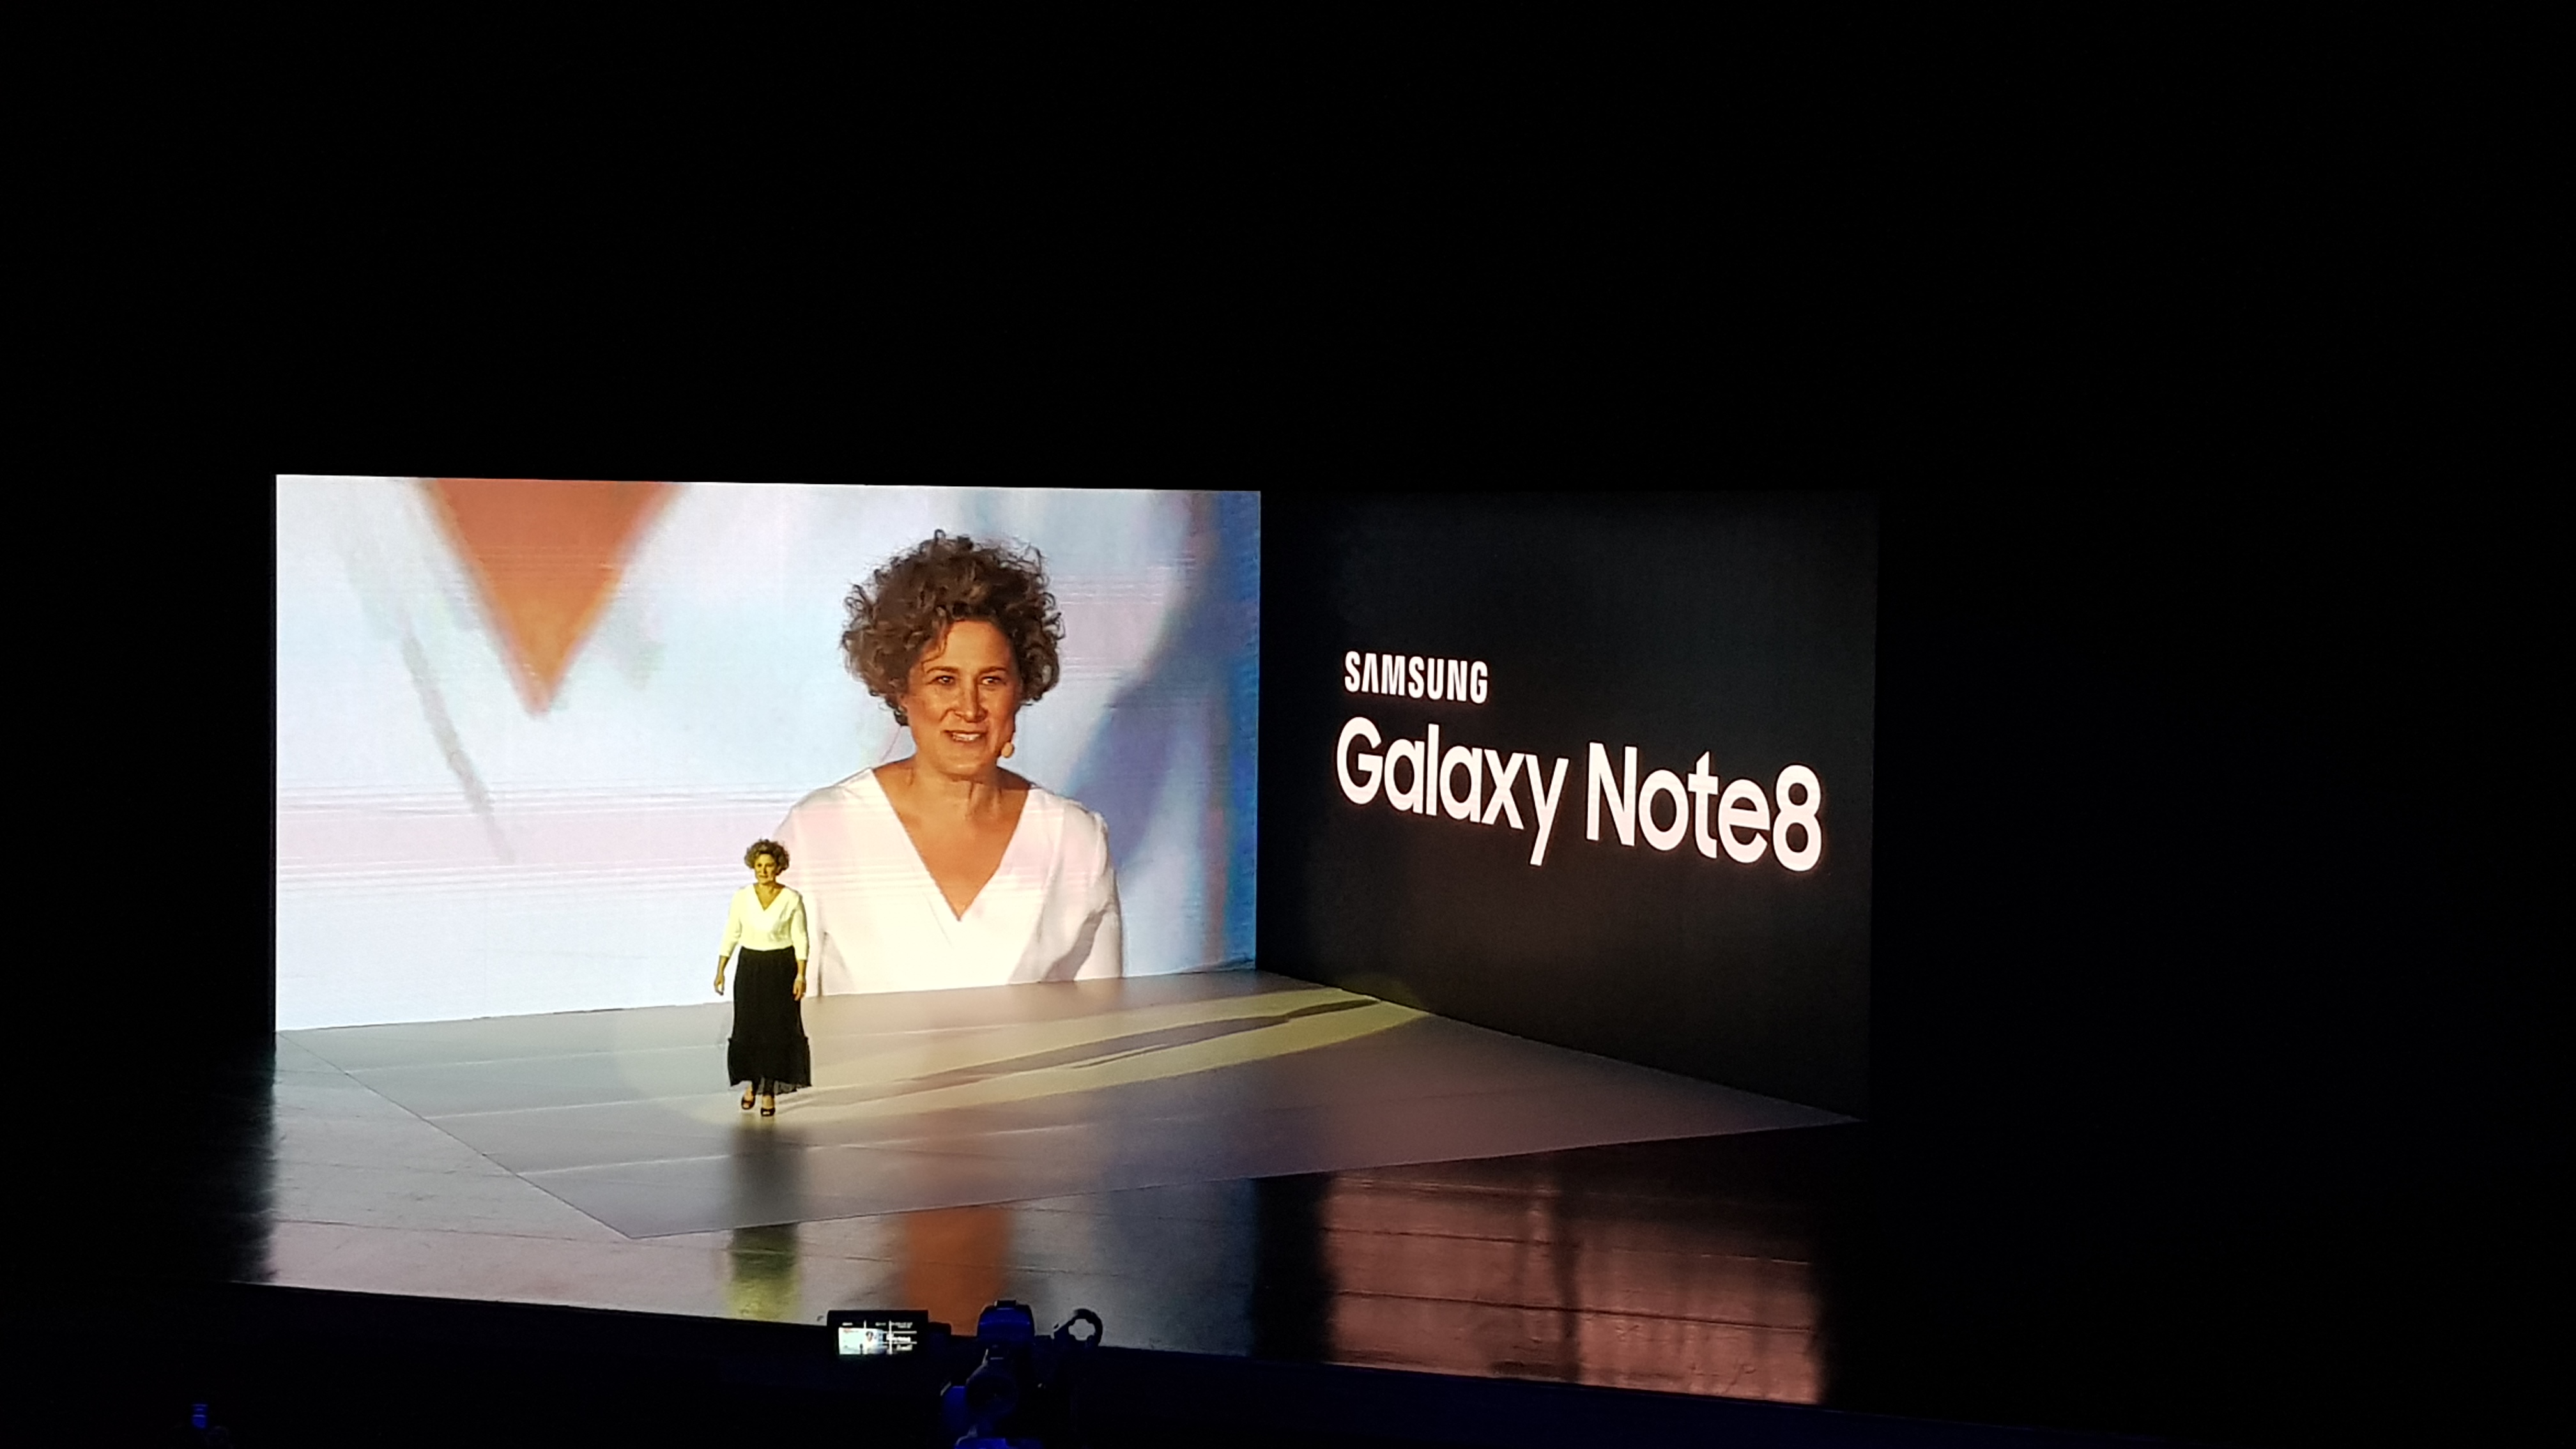 Samsung lança Galaxy Note8 no Brasil com promoções e experiências para seus consumidores